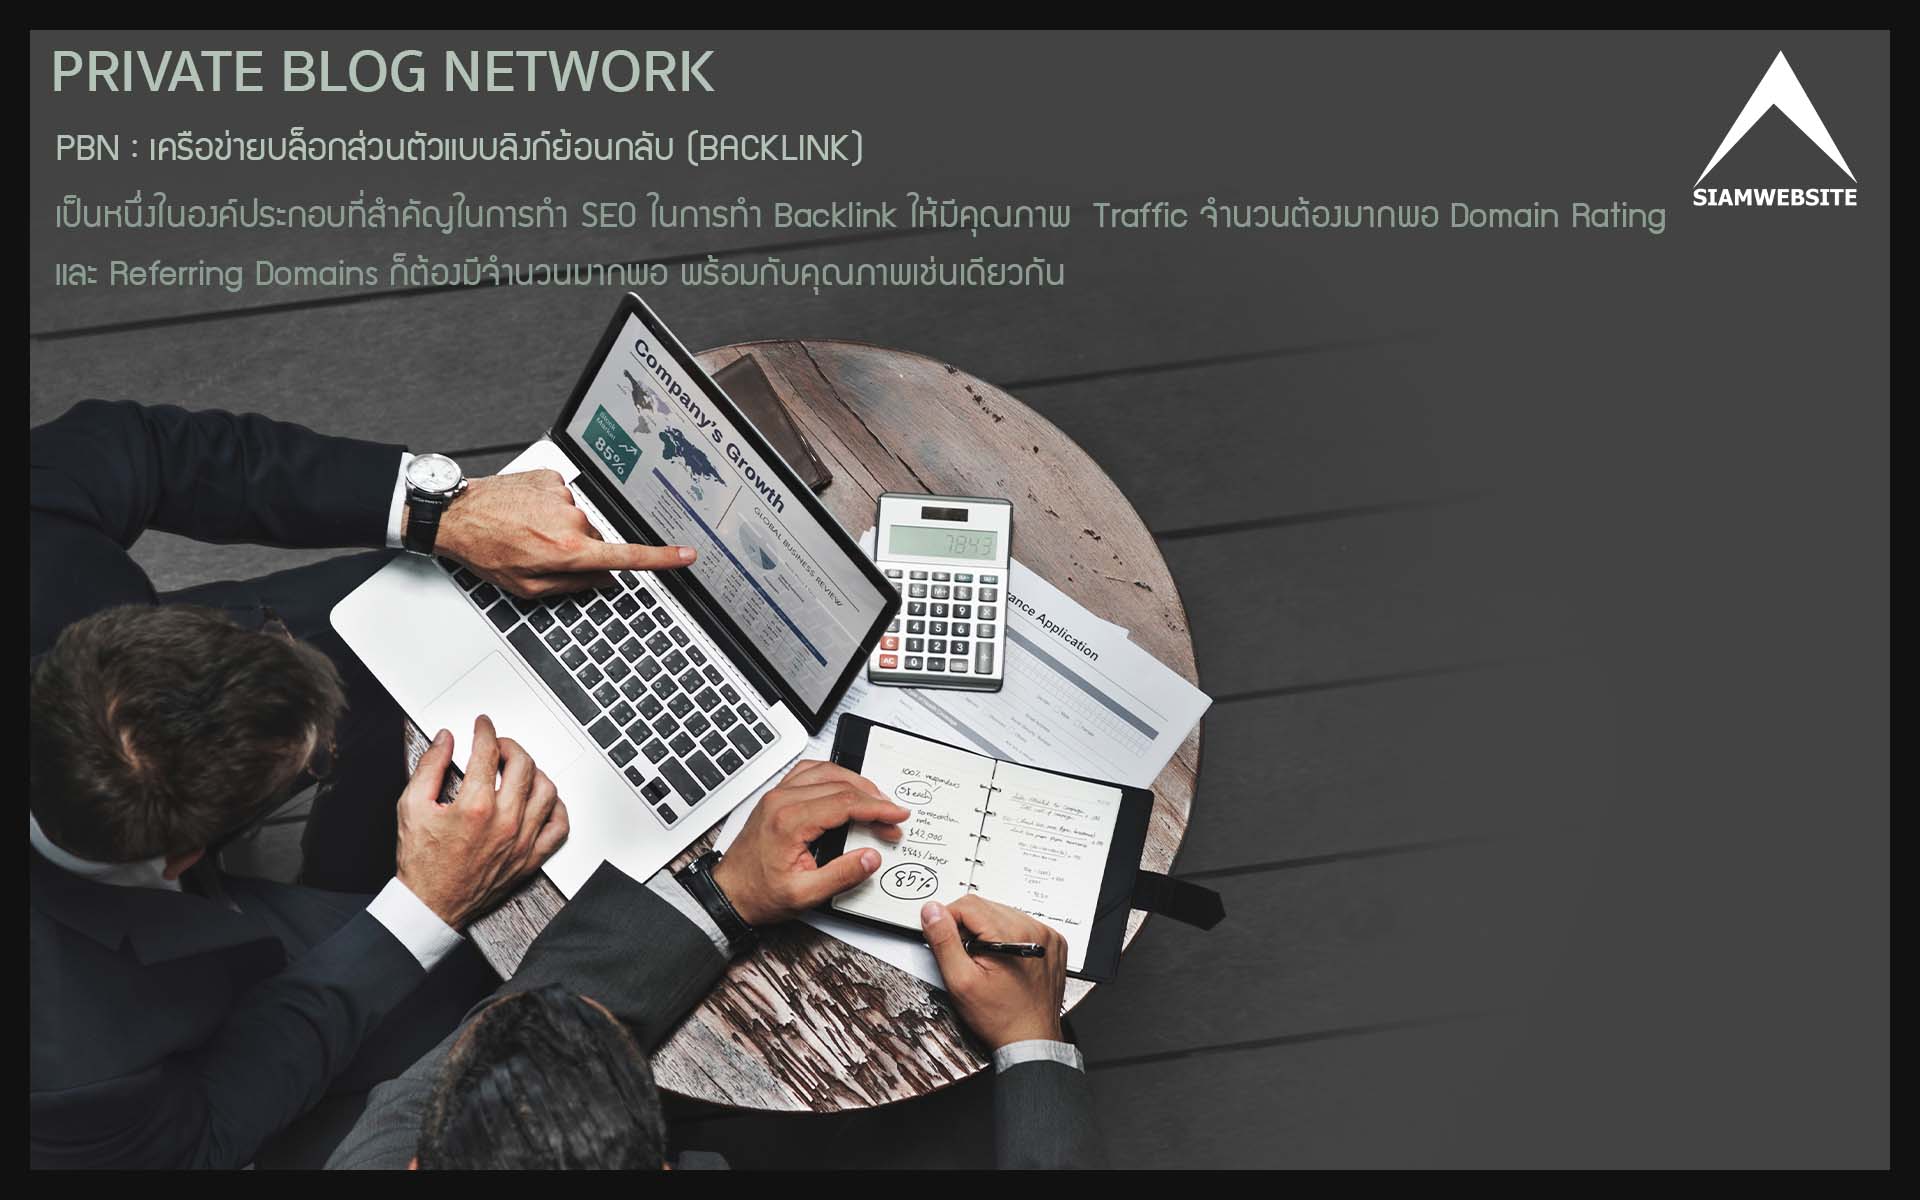 รับทําเว็บไซต์ เว็บขยายสายงาน Private Blog Network : PBN เครือข่ายบล็อกส่วนตัวแบบลิงก์ย้อนกลับ (BACKLINK) | TTT-WEBSITE 